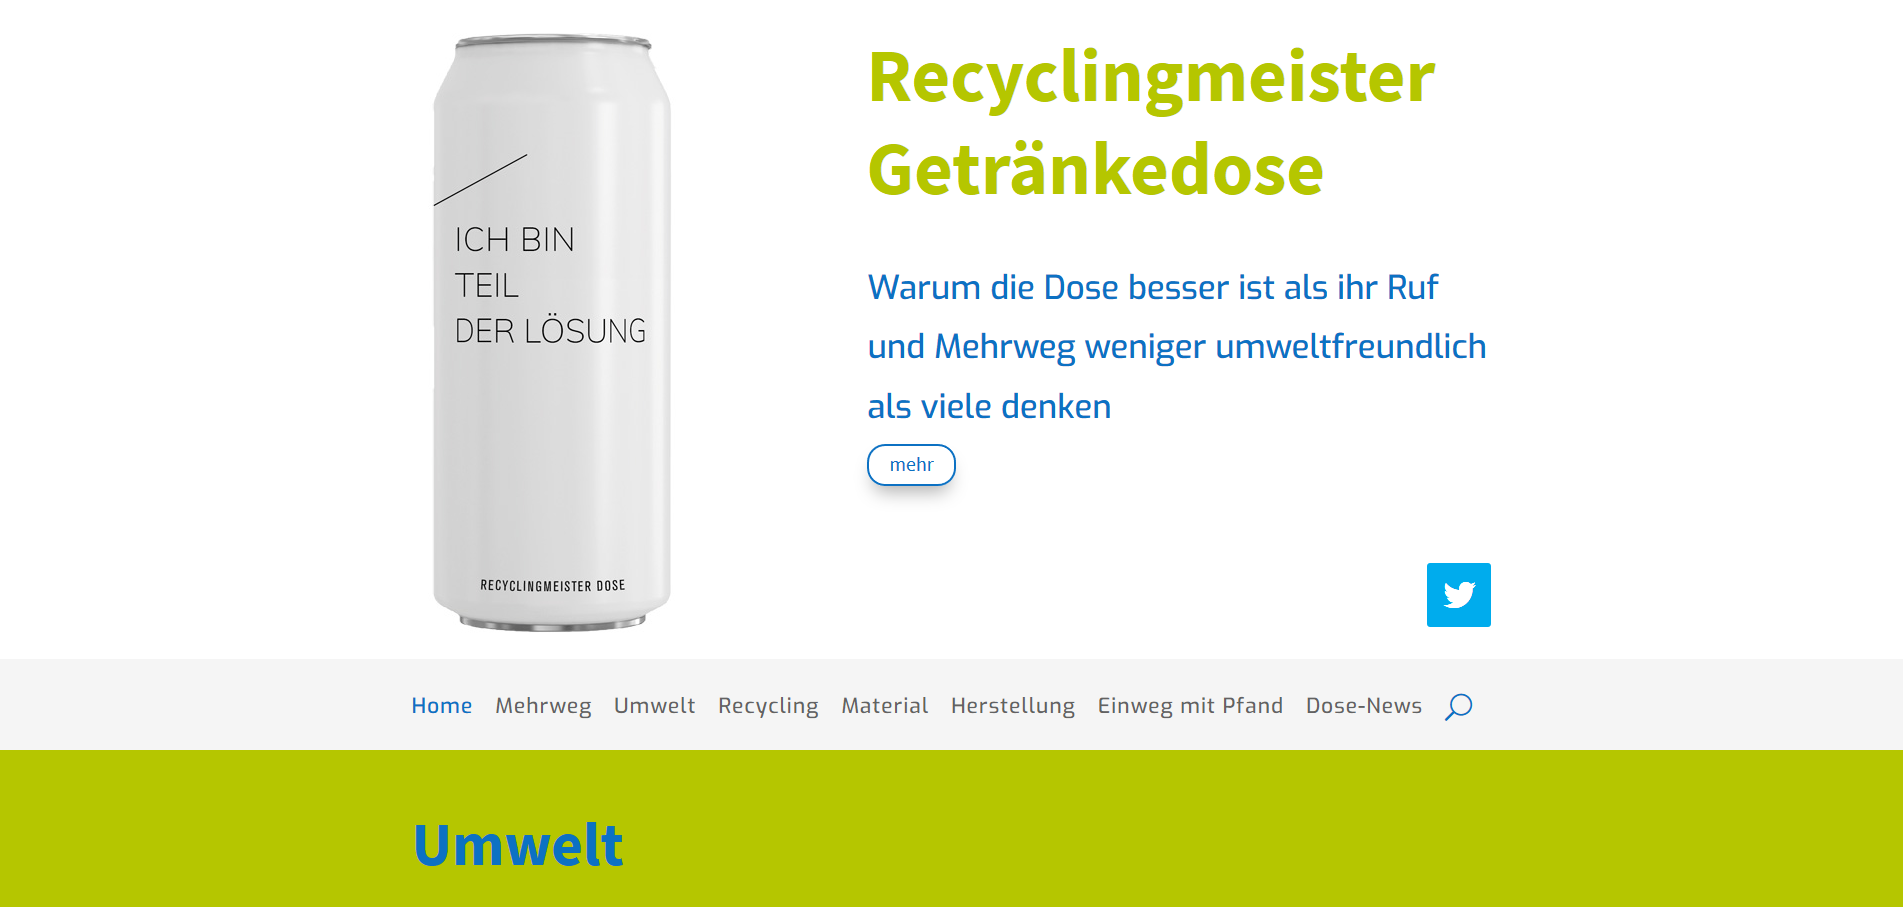 www.recyclingmeister.de